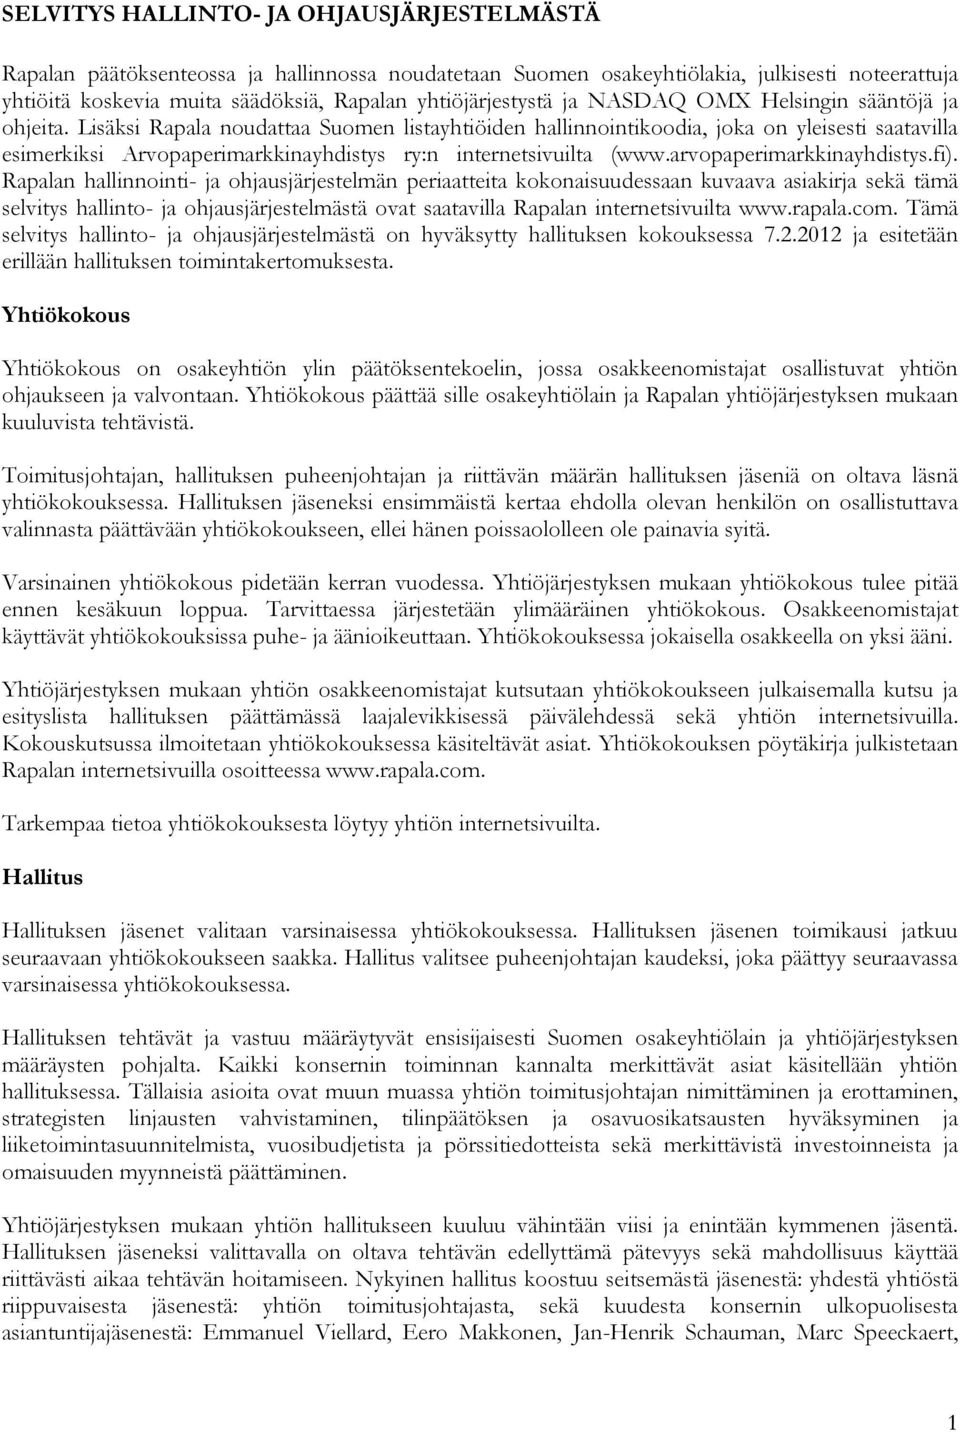 Lisäksi Rapala noudattaa Suomen listayhtiöiden hallinnointikoodia, joka on yleisesti saatavilla esimerkiksi Arvopaperimarkkinayhdistys ry:n internetsivuilta (www.arvopaperimarkkinayhdistys.fi).